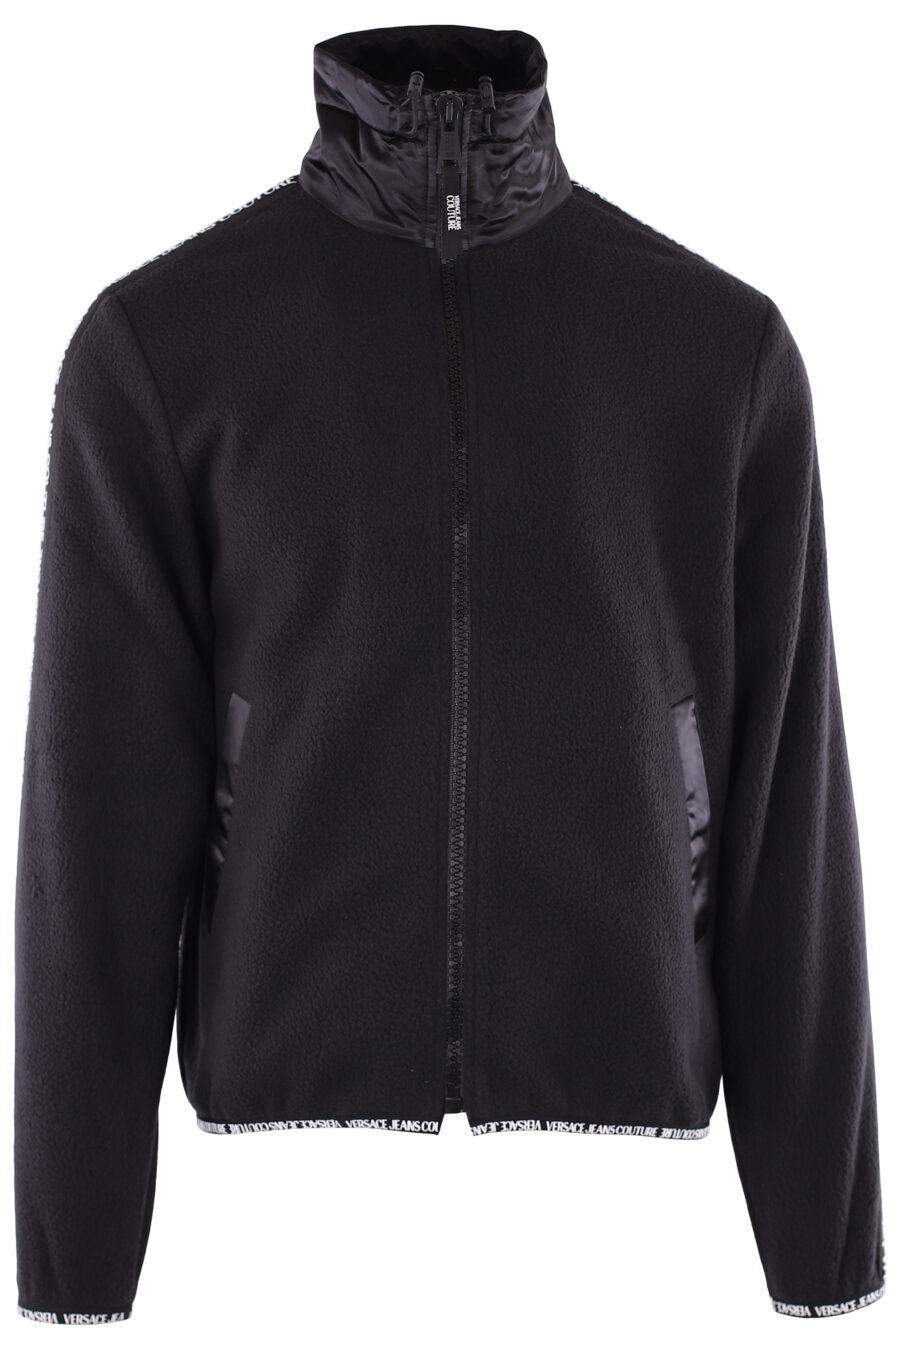 Sweat-shirt noir en polaire avec logo en ruban sur les manches - IMG 6369